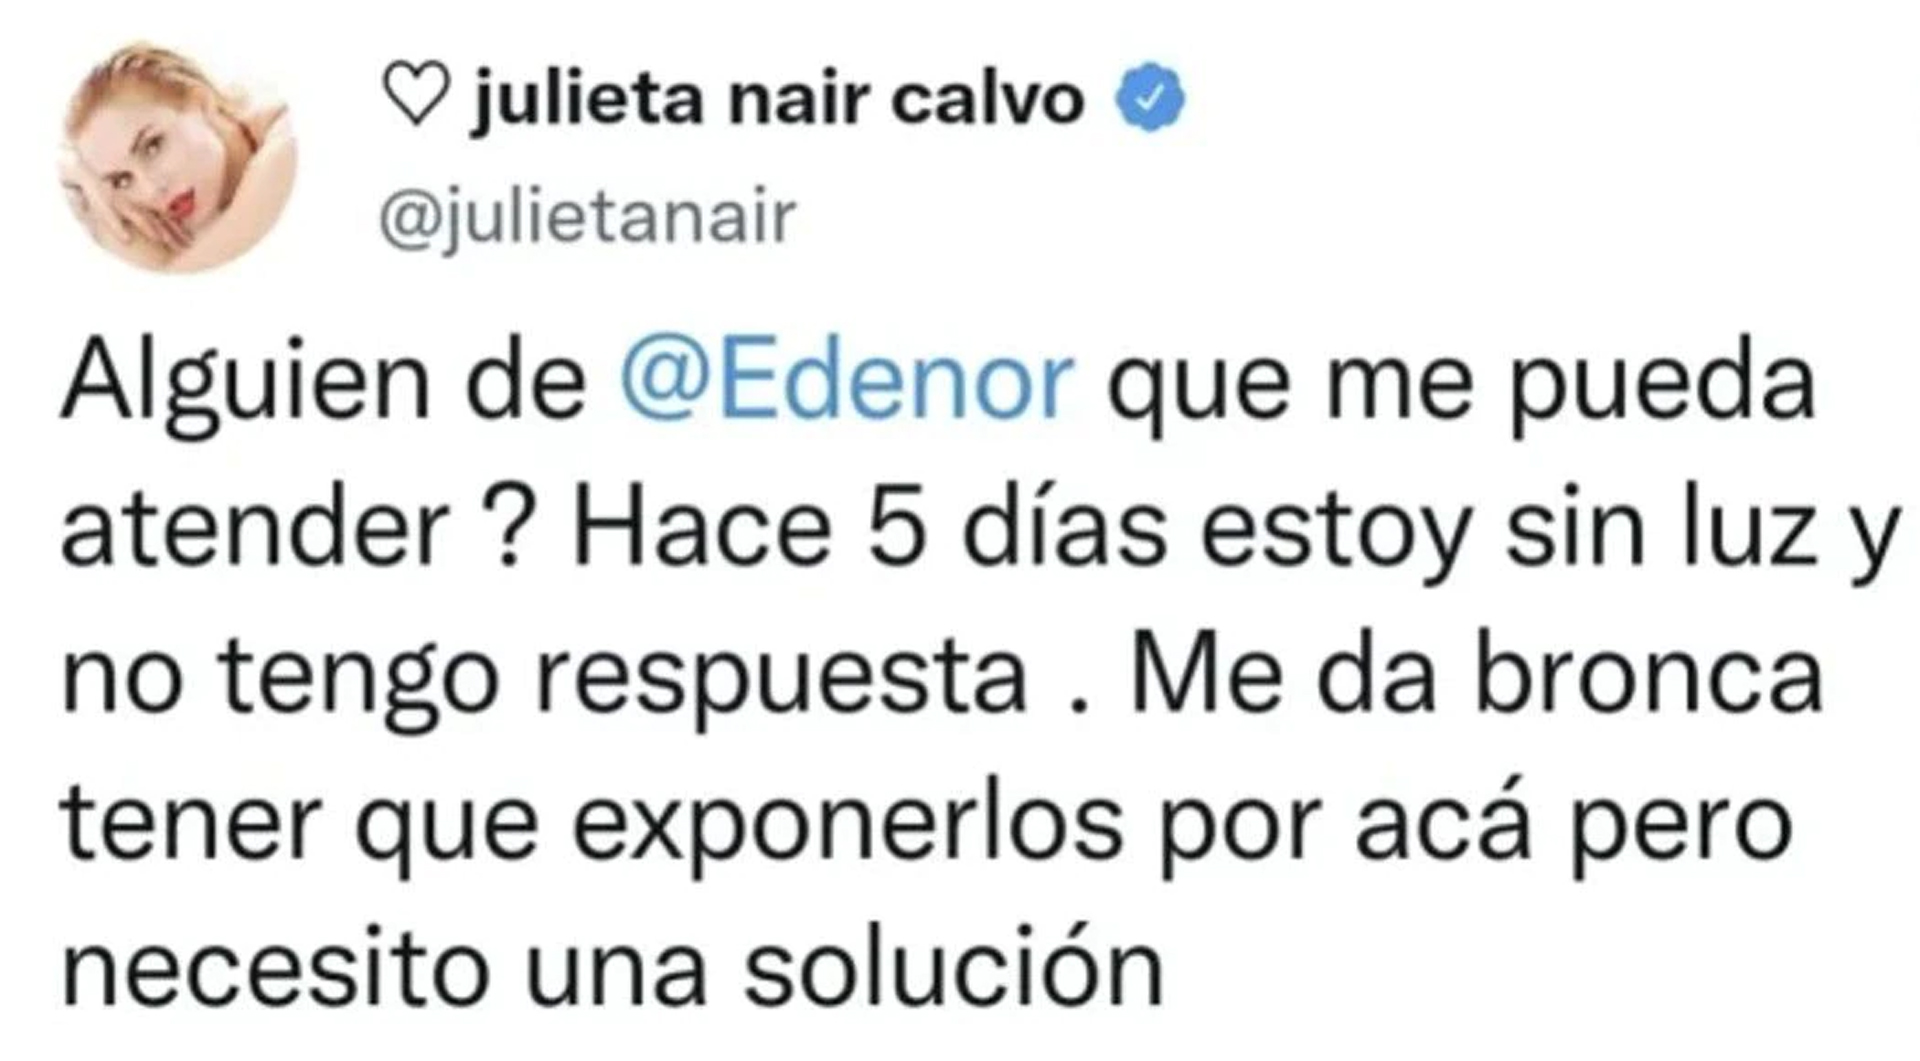 El tweet de Julieta Nair Calvo contra la empresa de energía que la dejó sin luz durante varios días (Foto: Twitter)